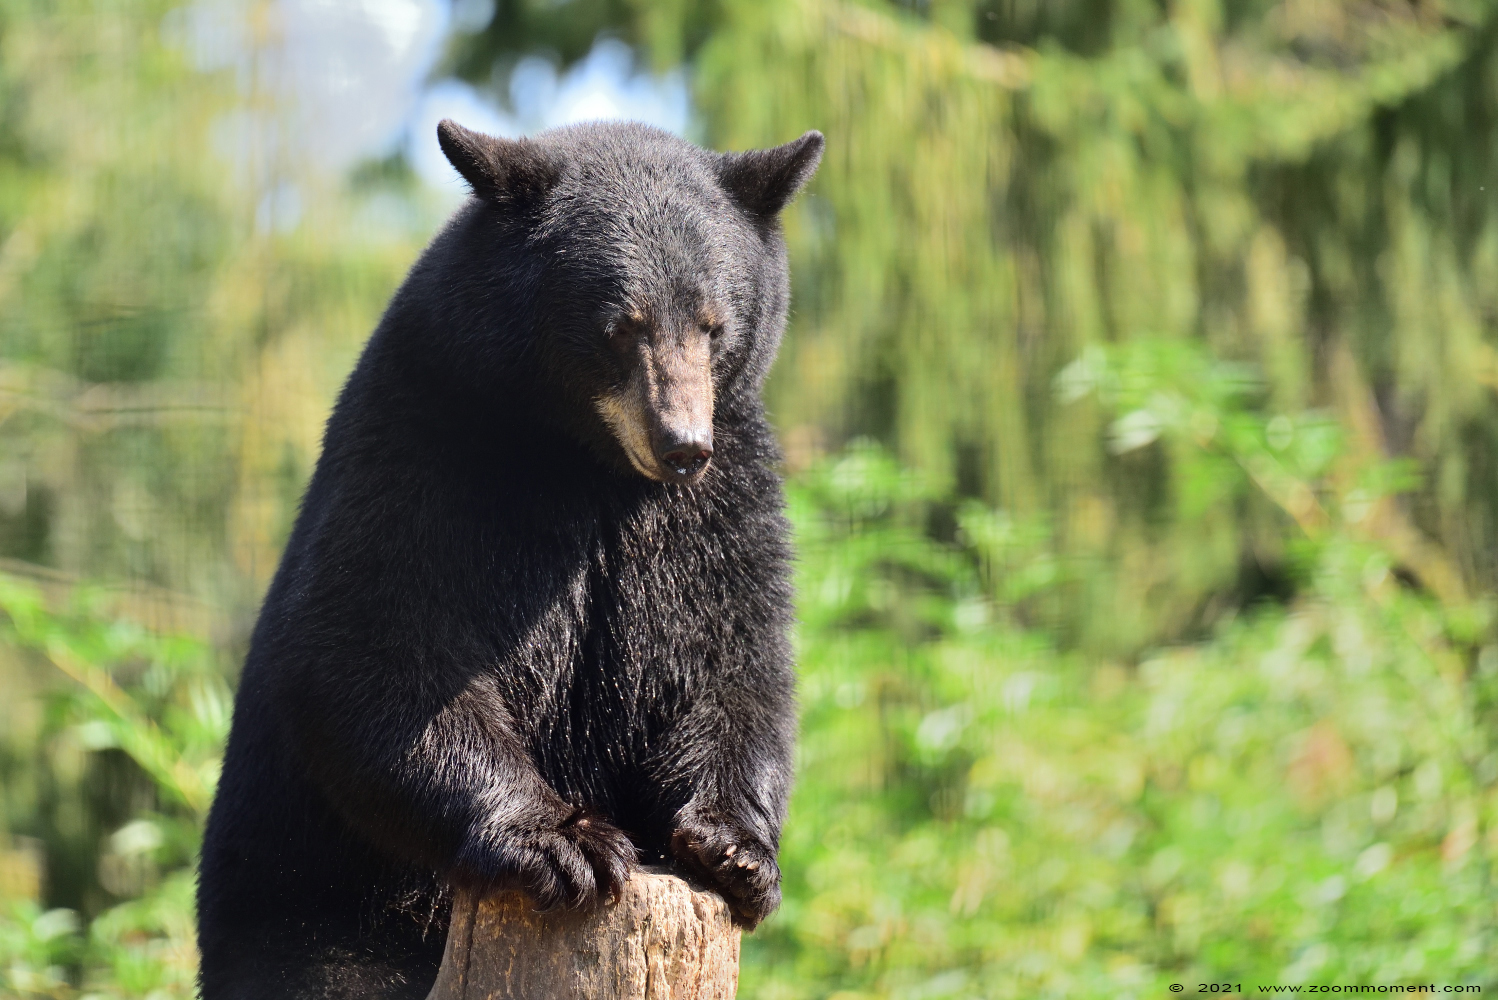 Amerikaanse zwarte beer ( Ursus americanus )  American black bear
Trefwoorden: Ziezoo Volkel Nederland Amerikaanse zwarte beer Ursus americanus American black bear